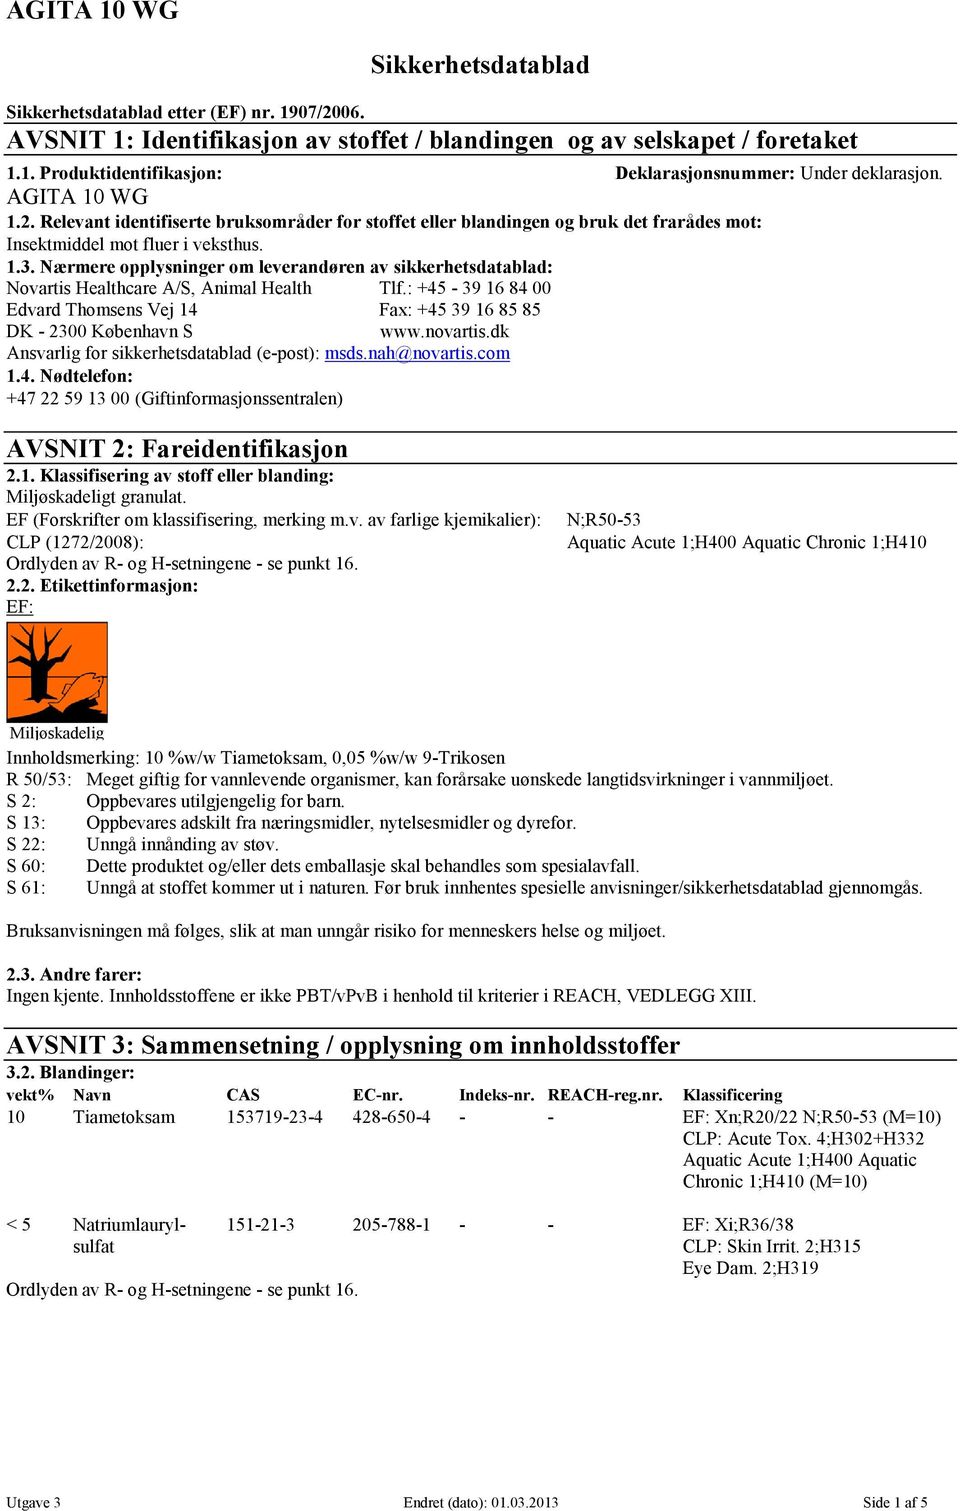 Nærmere opplysninger om leverandøren av sikkerhetsdatablad: Novartis Healthcare A/S, Animal Health Tlf.: +45-39 16 84 00 Edvard Thomsens Vej 14 Fax: +45 39 16 85 85 DK - 2300 København S www.novartis.